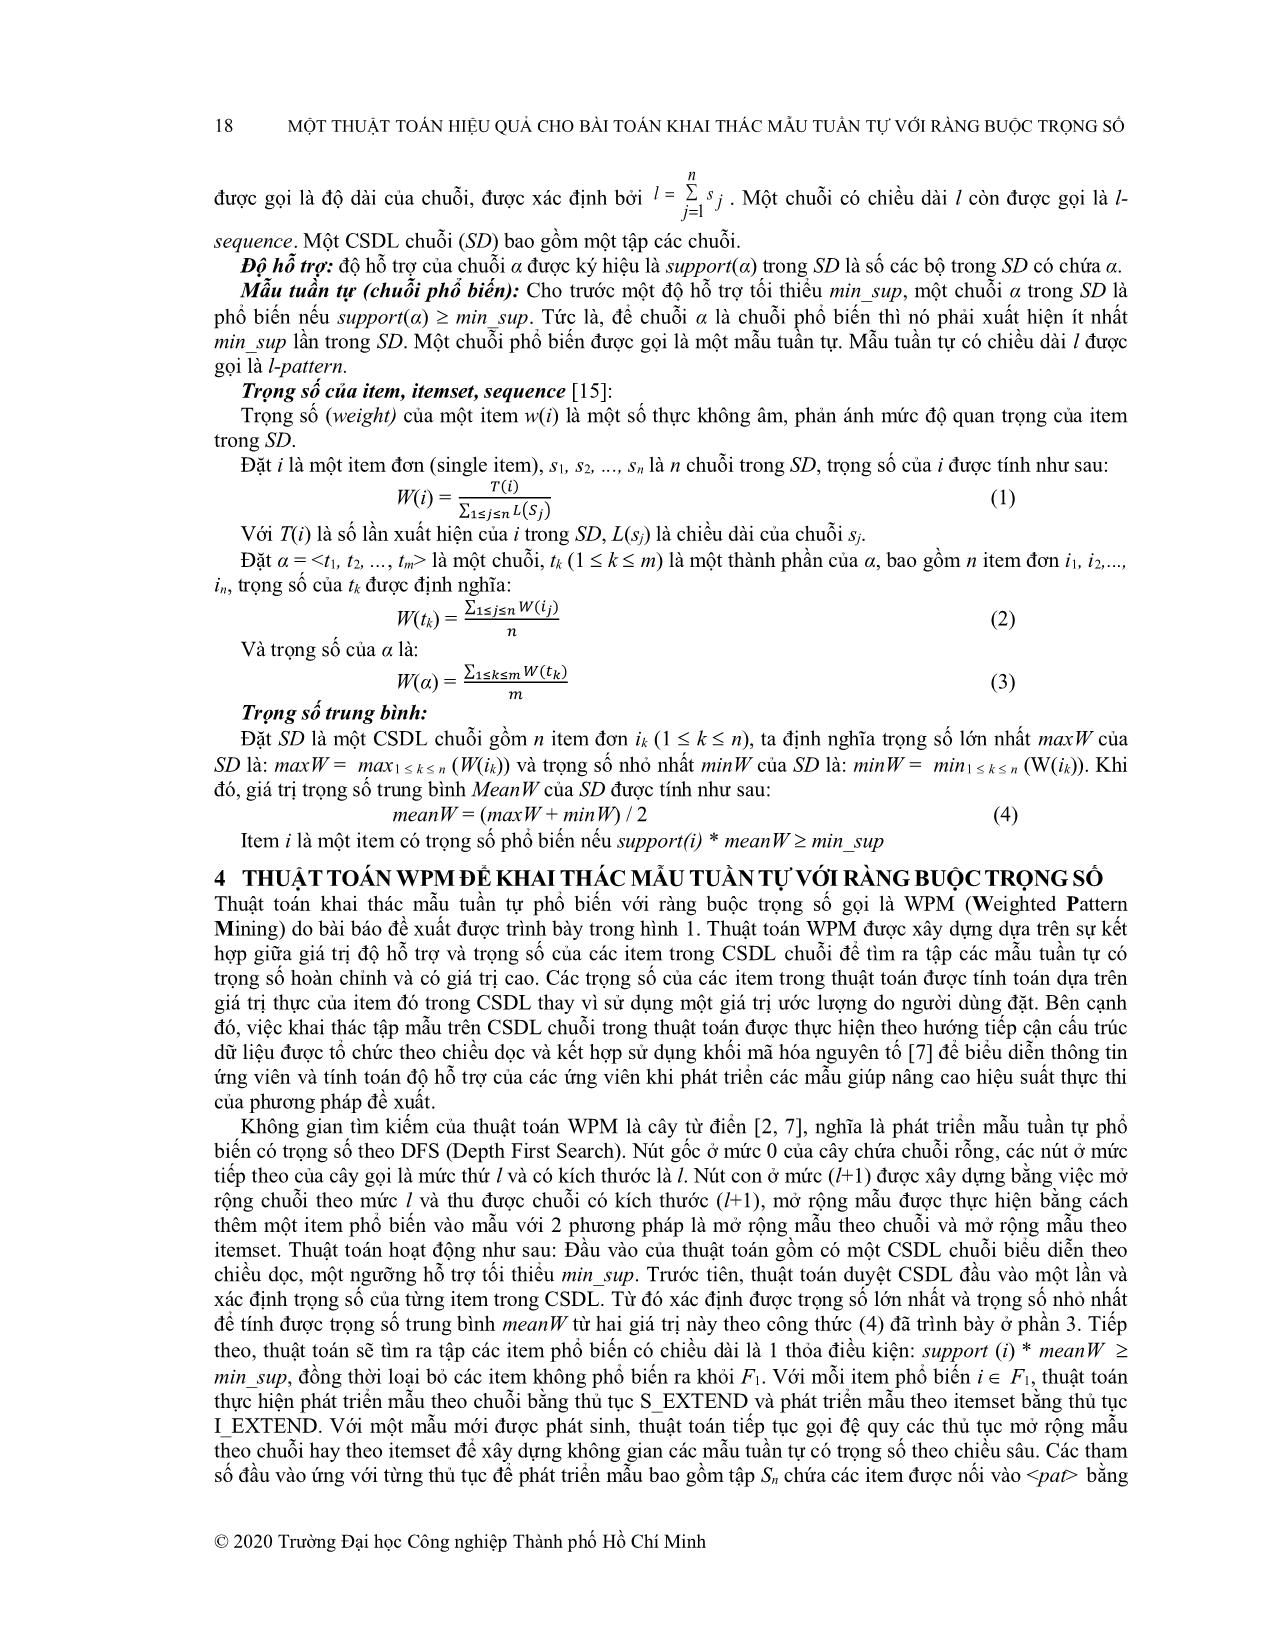 Một thuật toán hiệu quả cho bài toán khai thác mẫu tuần tự với ràng buộc trọng số trang 5